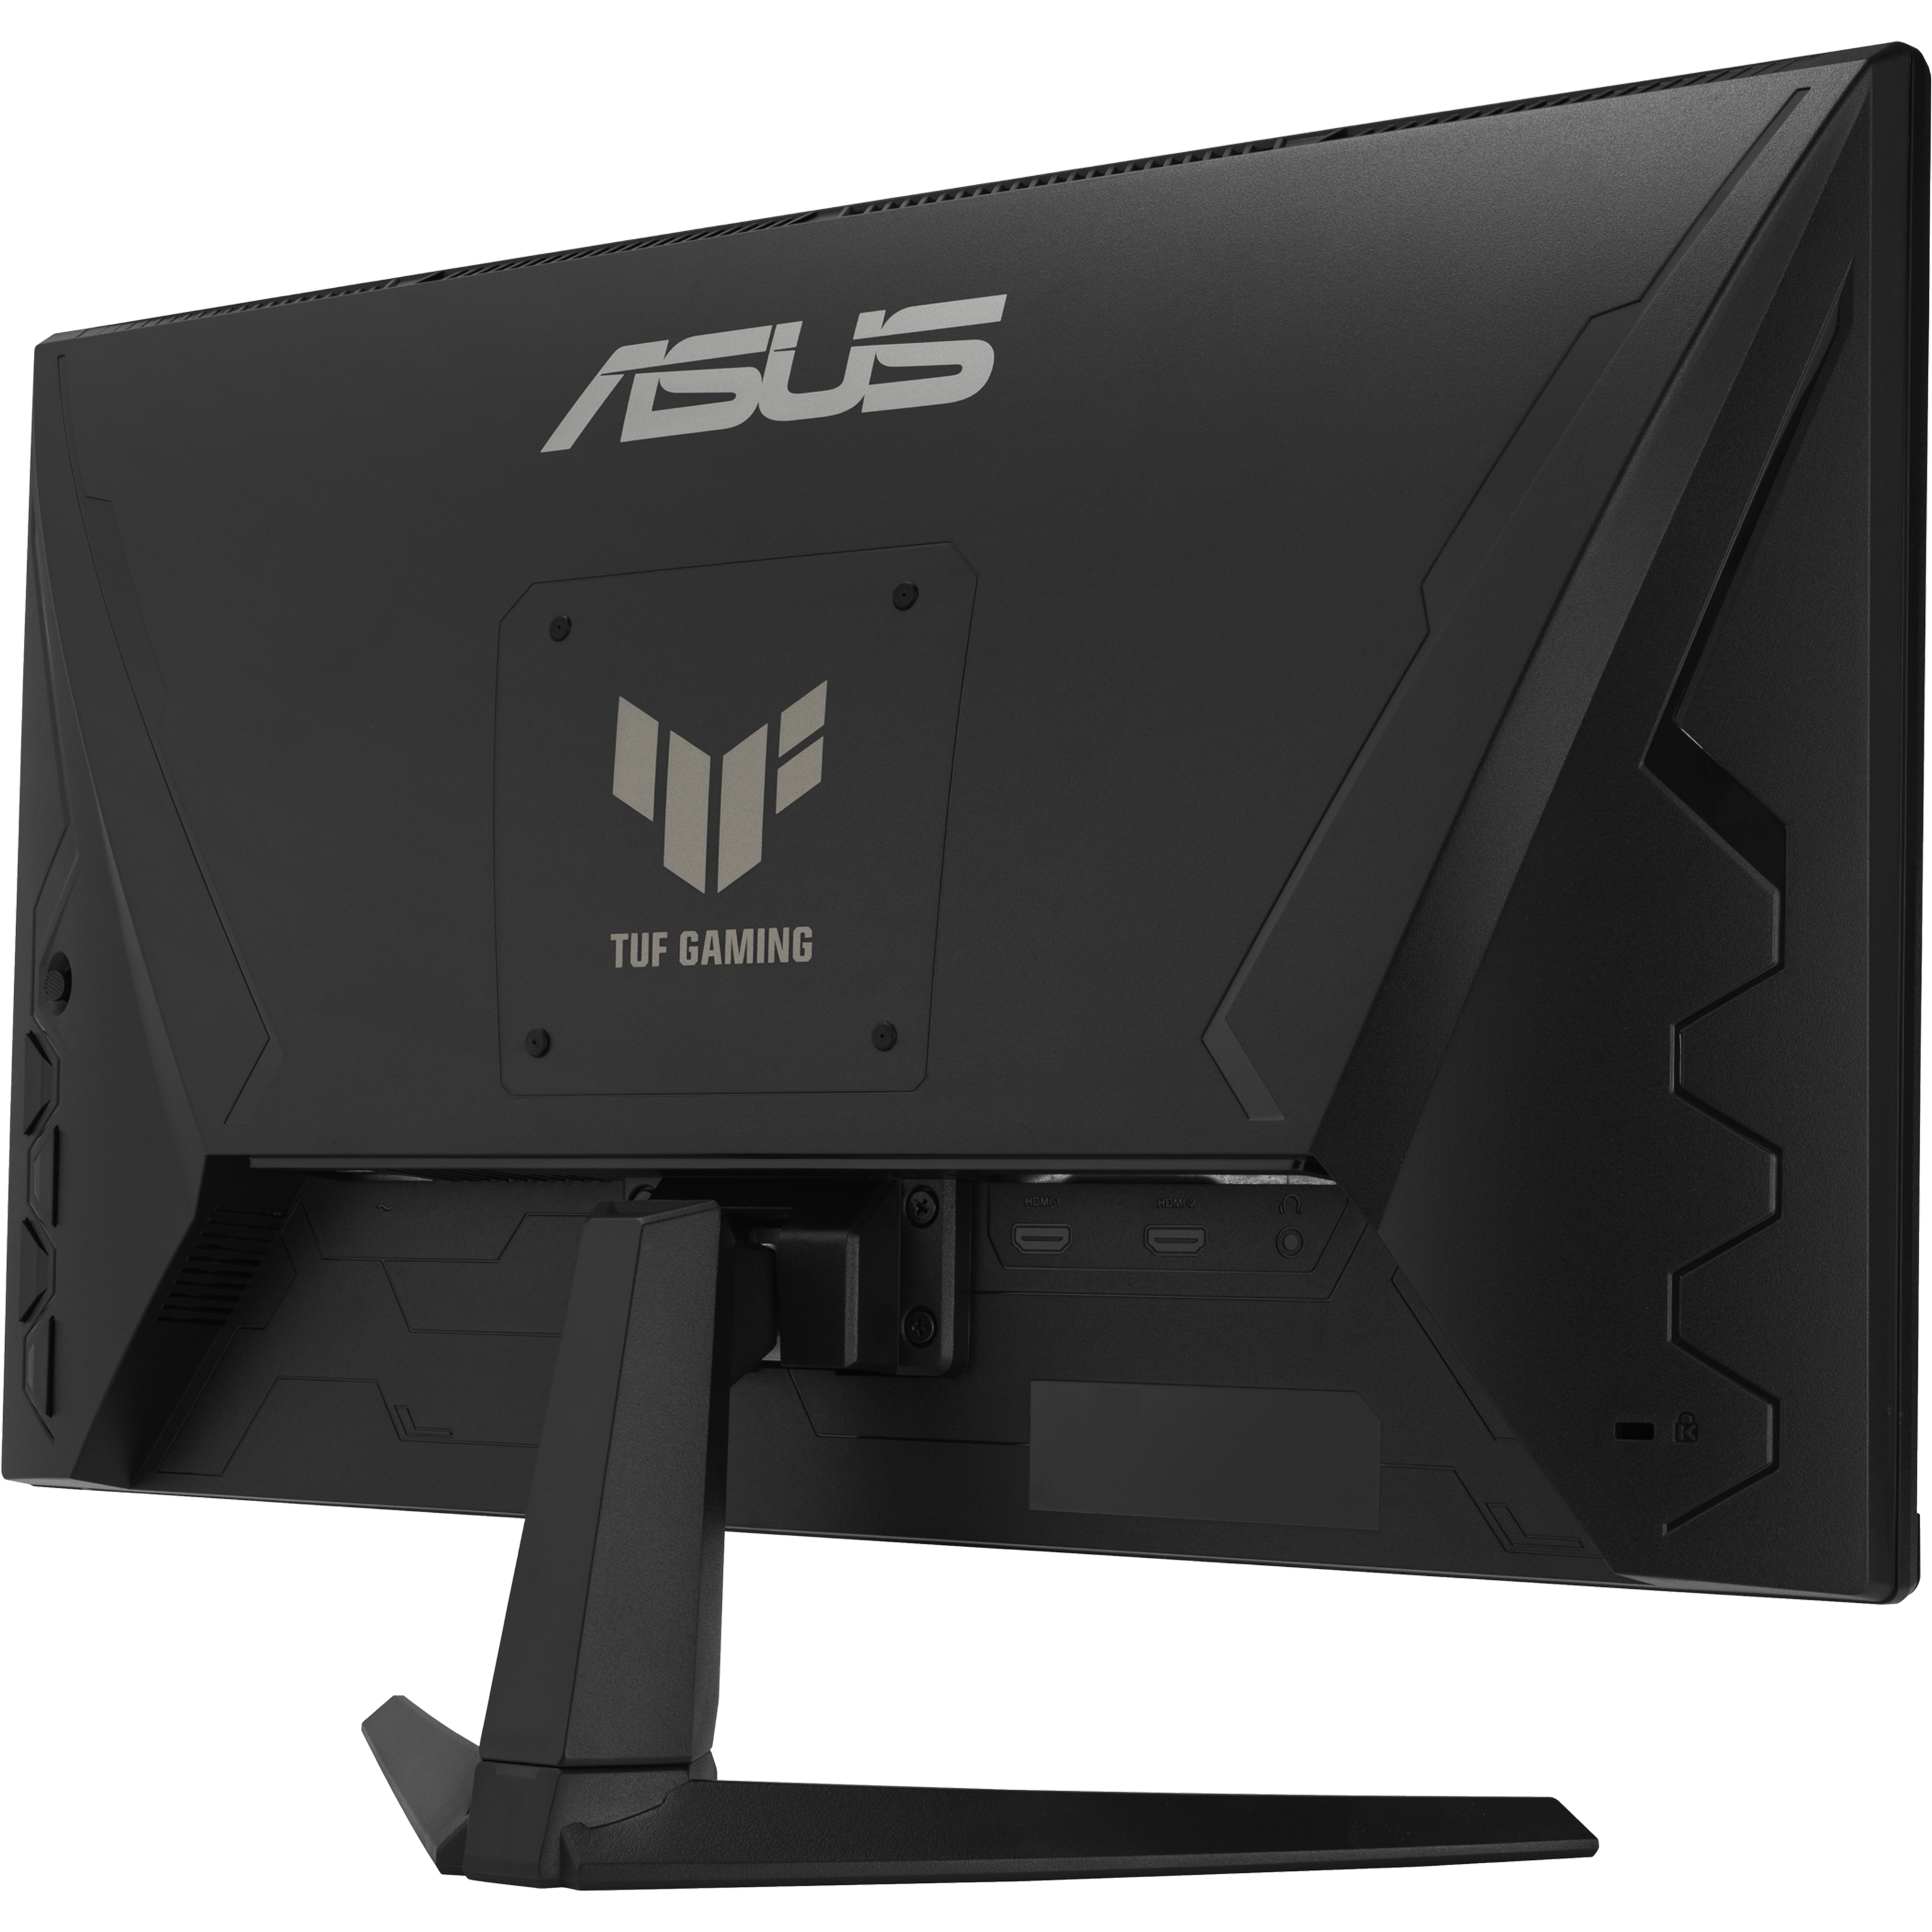 מסך מחשב גיימינג 23.8'' Asus TUF Gaming VG246H1A FreeSync IPS FHD 0.5ms 100Hz - צבע שחור שלוש שנות אחריות ע